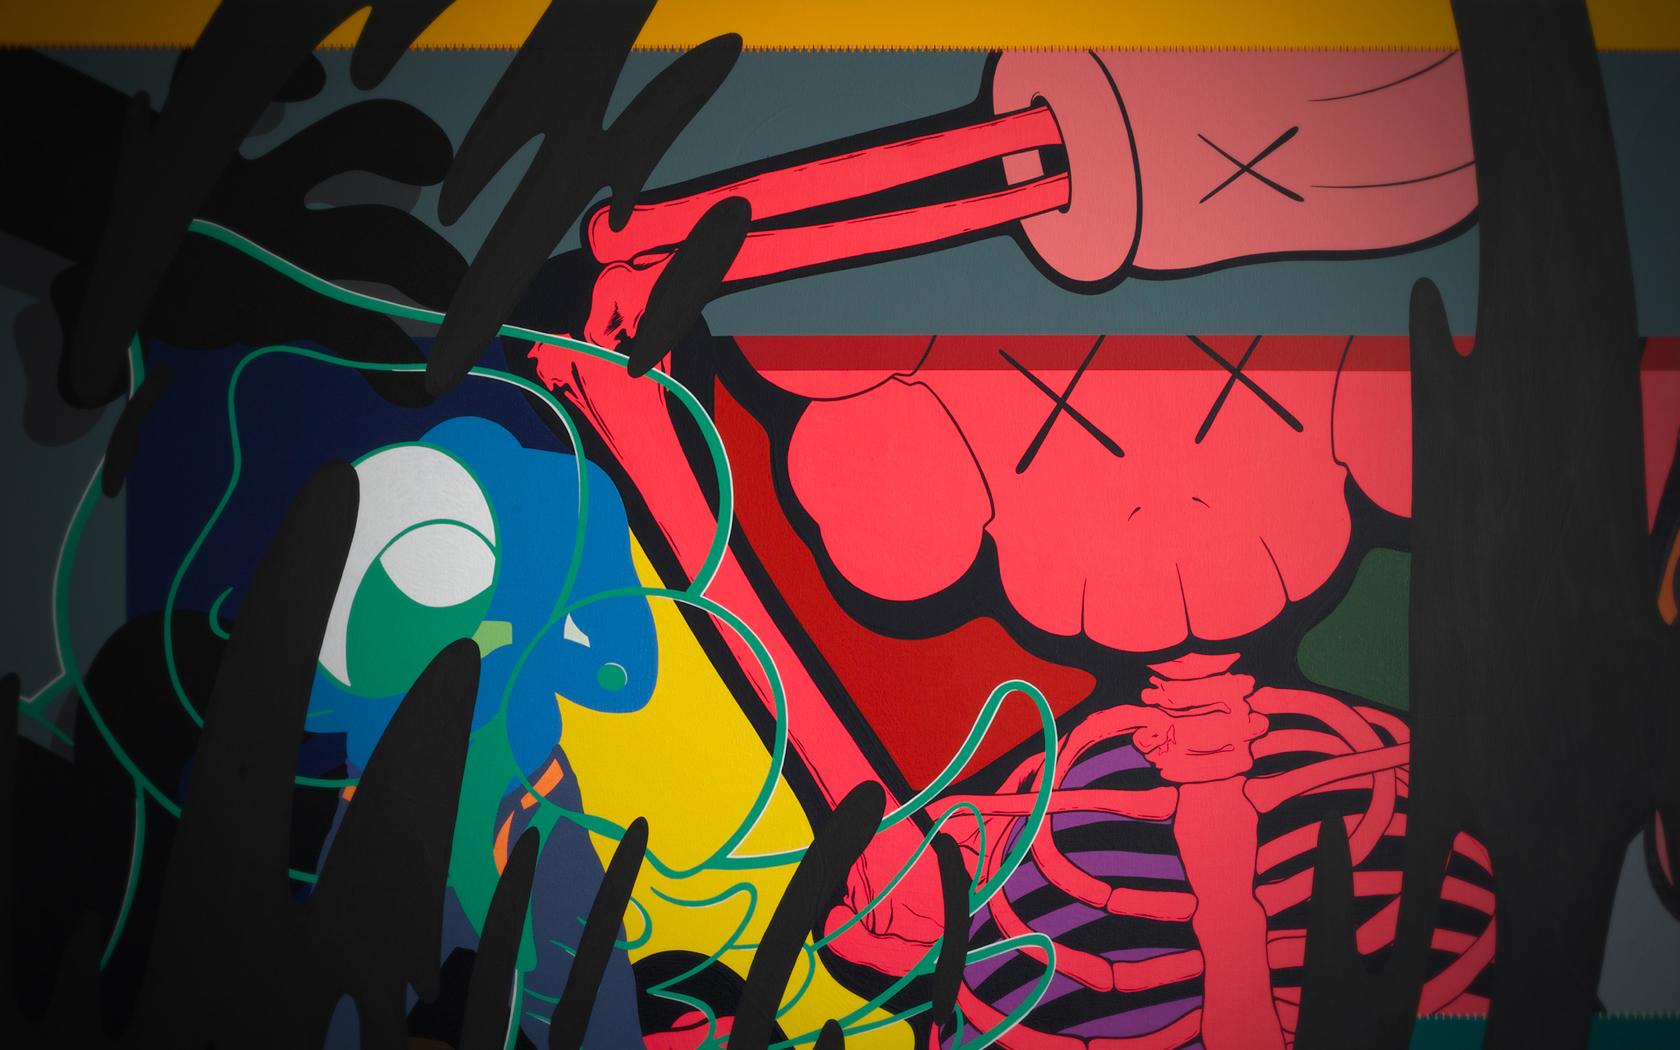 headphones, hd abstract wallpaper, vector dark, graffiti, peace